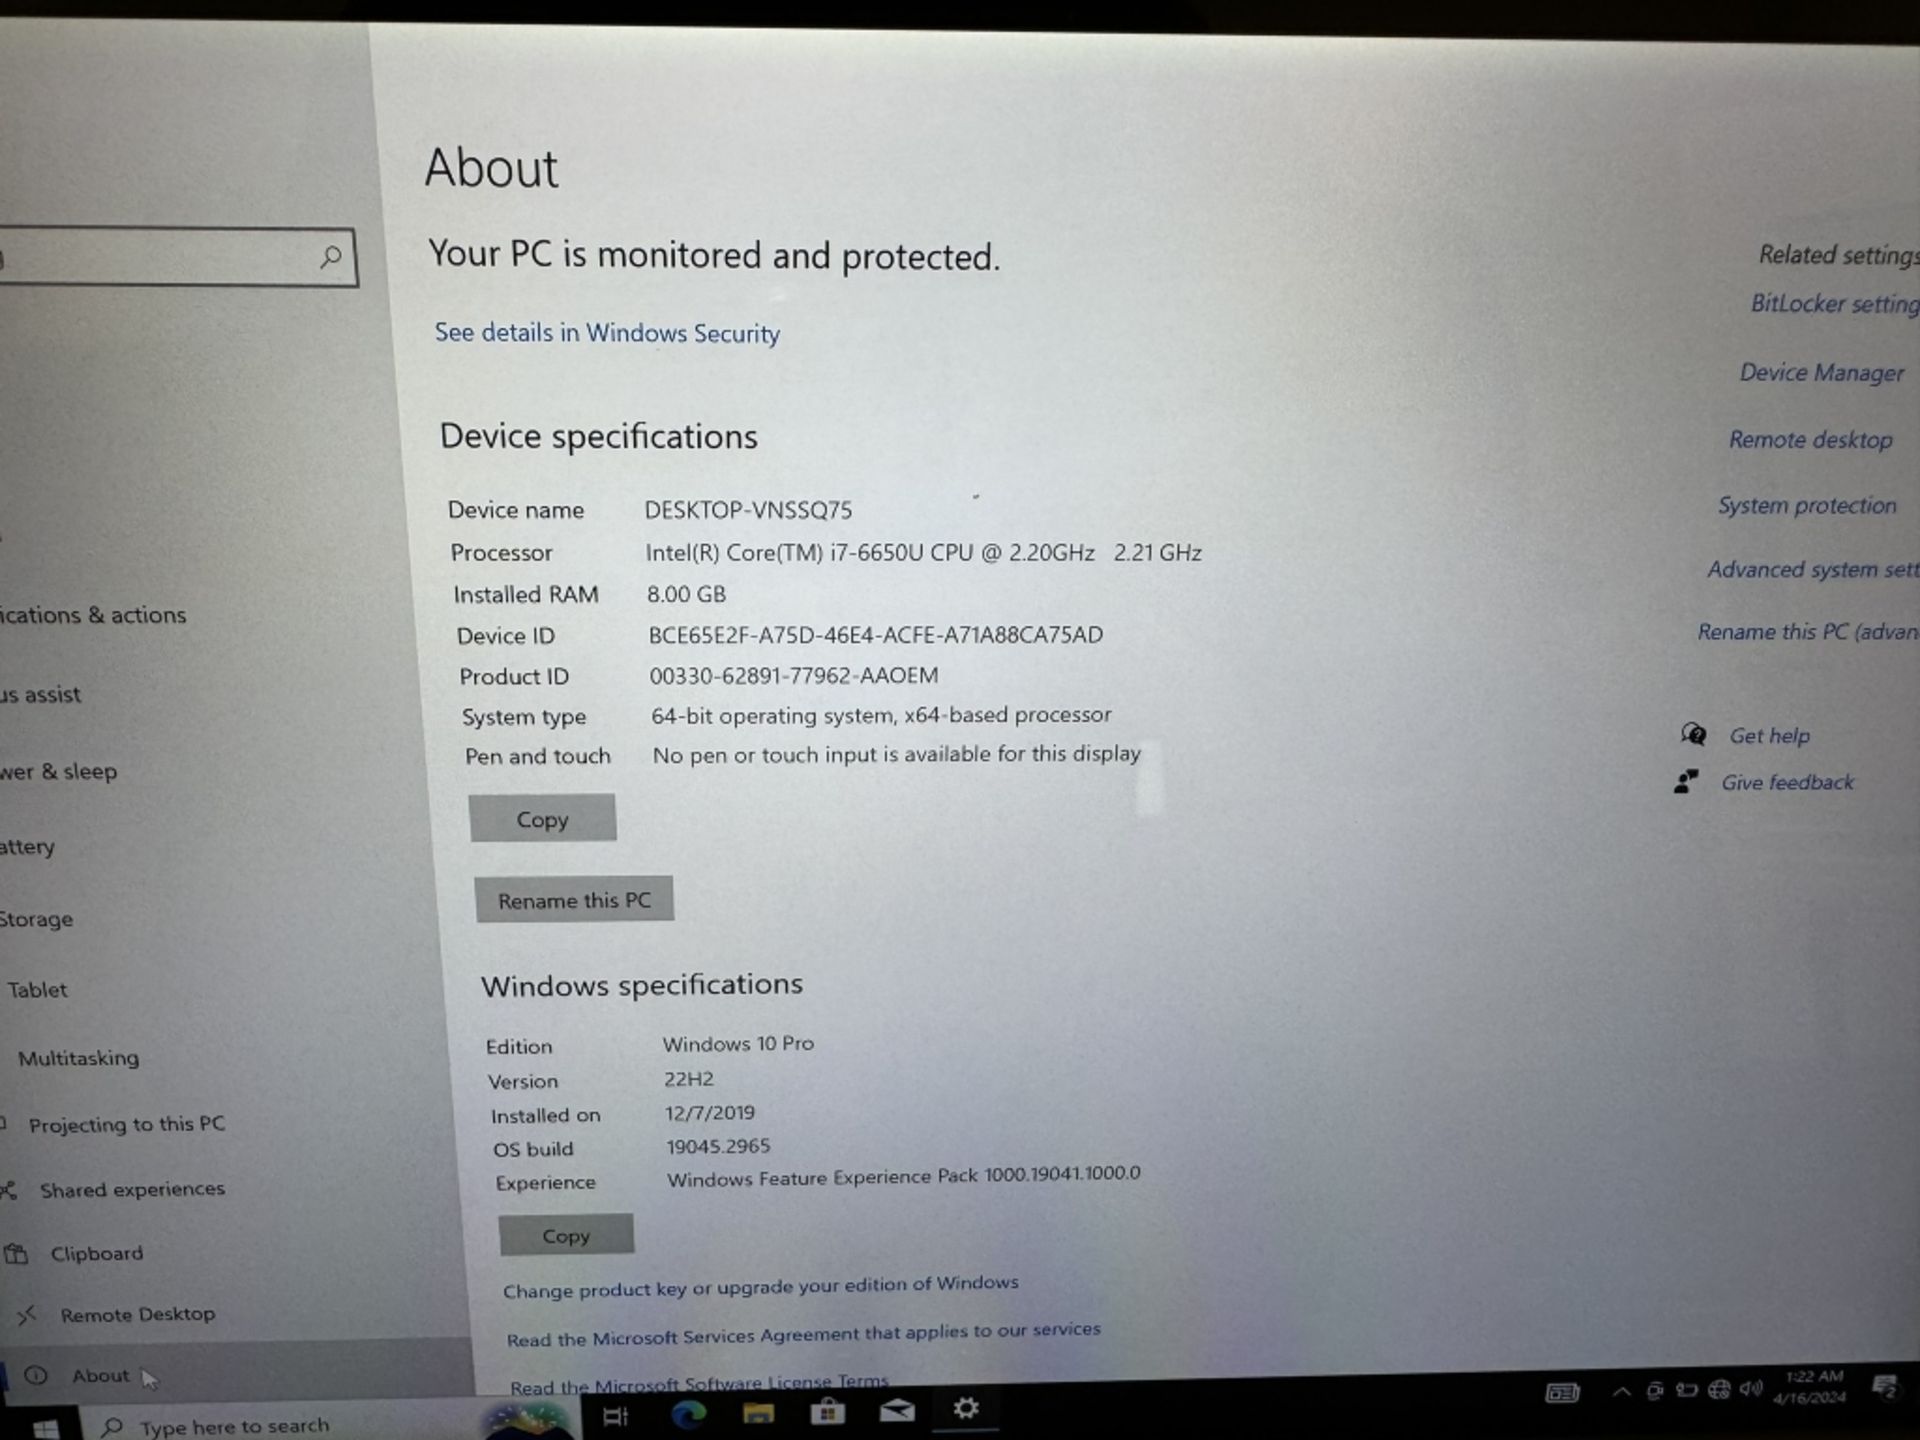 Microsoft Surface Pro 4 Corei7 8GB RAM 256GB SSD - Image 3 of 5